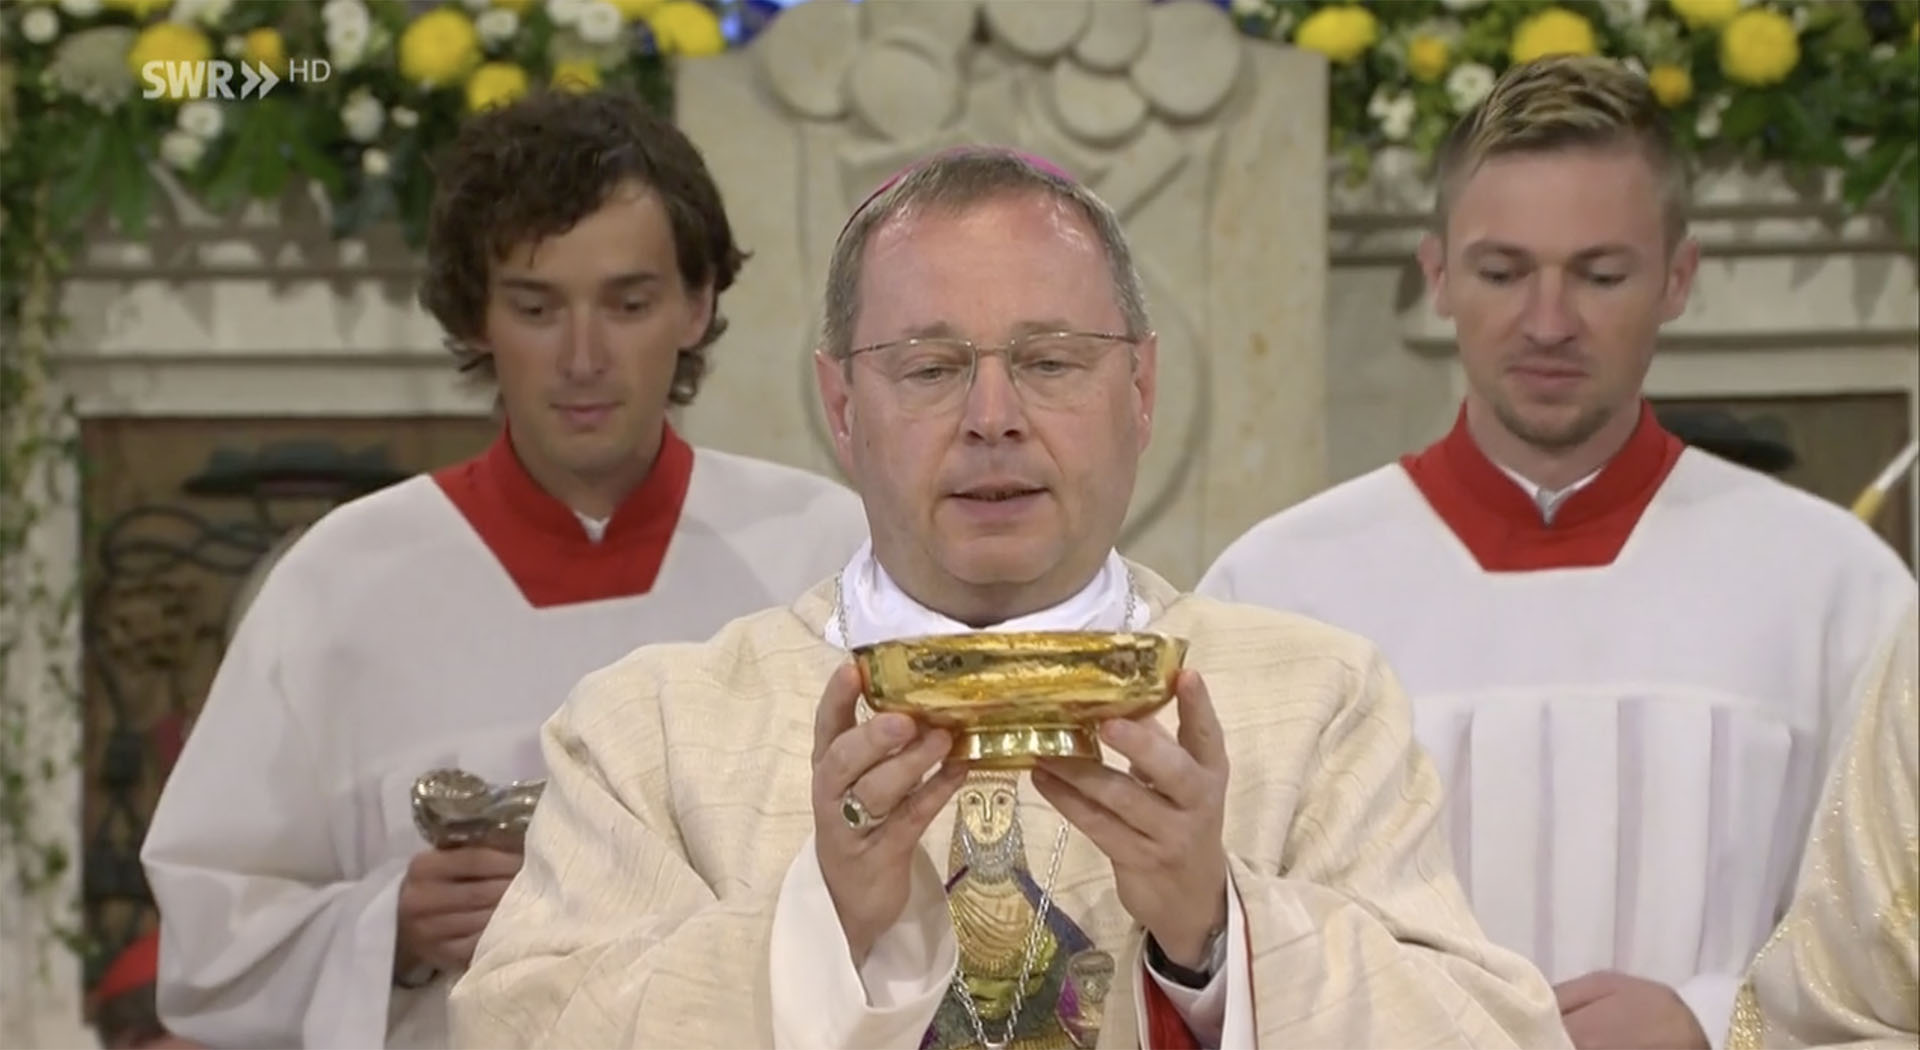 L'évêque Georg Bätzing, 58 ans, est le nouveau président de la Conférence des évêques allemands | © capture d'écran